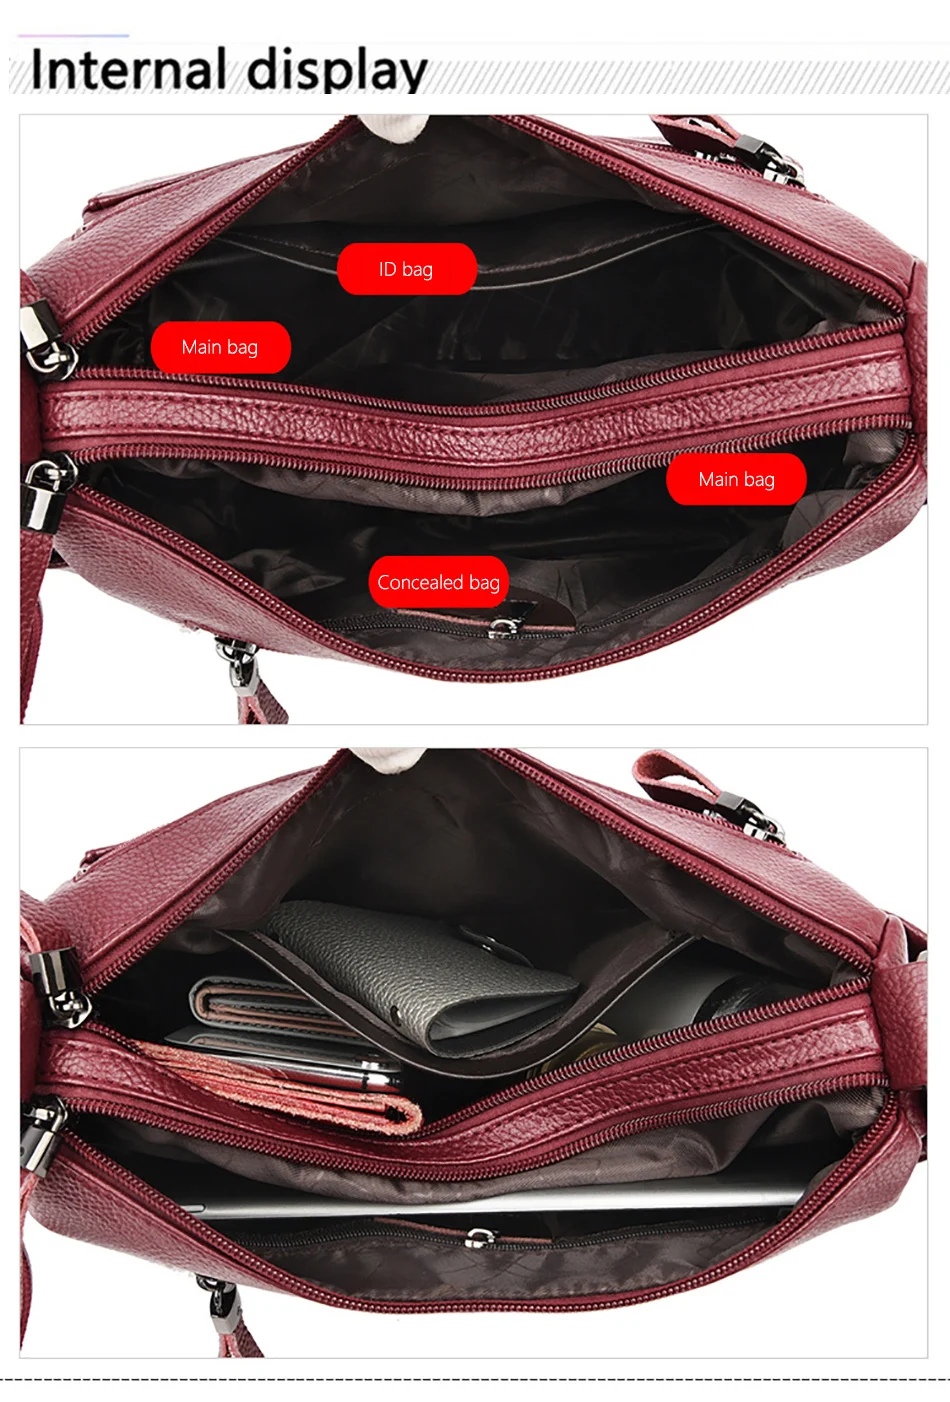 Genuine Brand Leather Sac Luxury Handbags Purse Women Bags Designer Shoulder Crossbody Messenger Bags Female 2021 Waterproof Bag